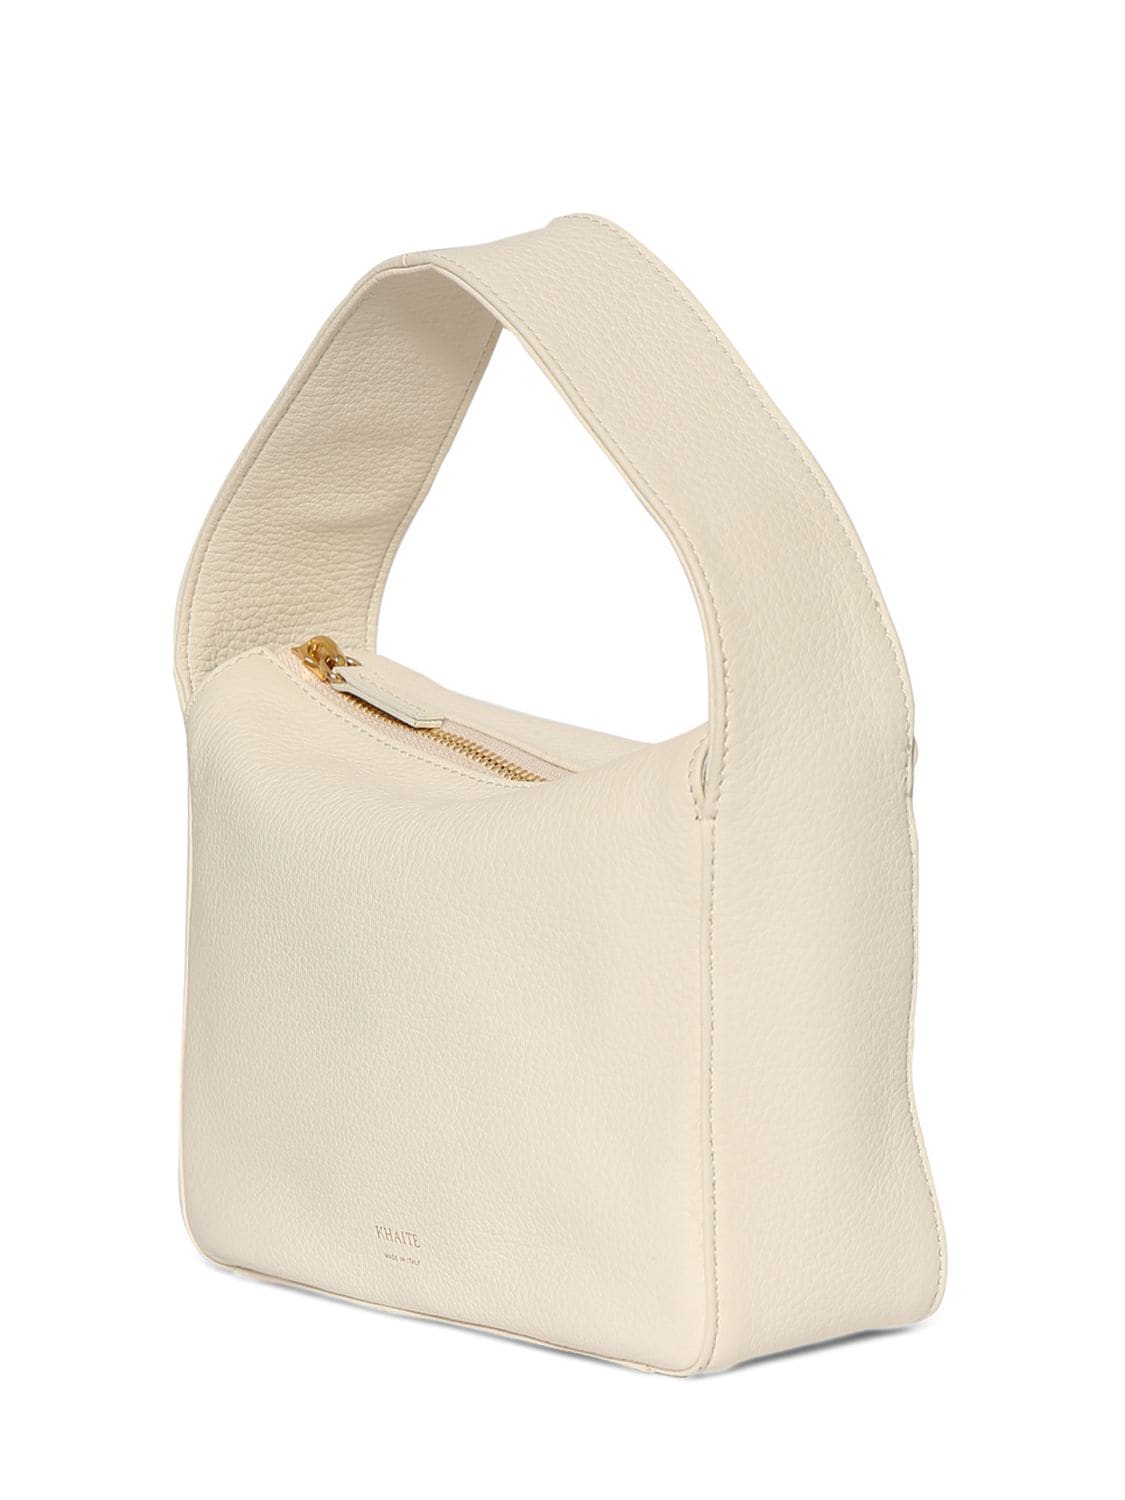 Shop Khaite Small Elena Leather Handbag In Off White